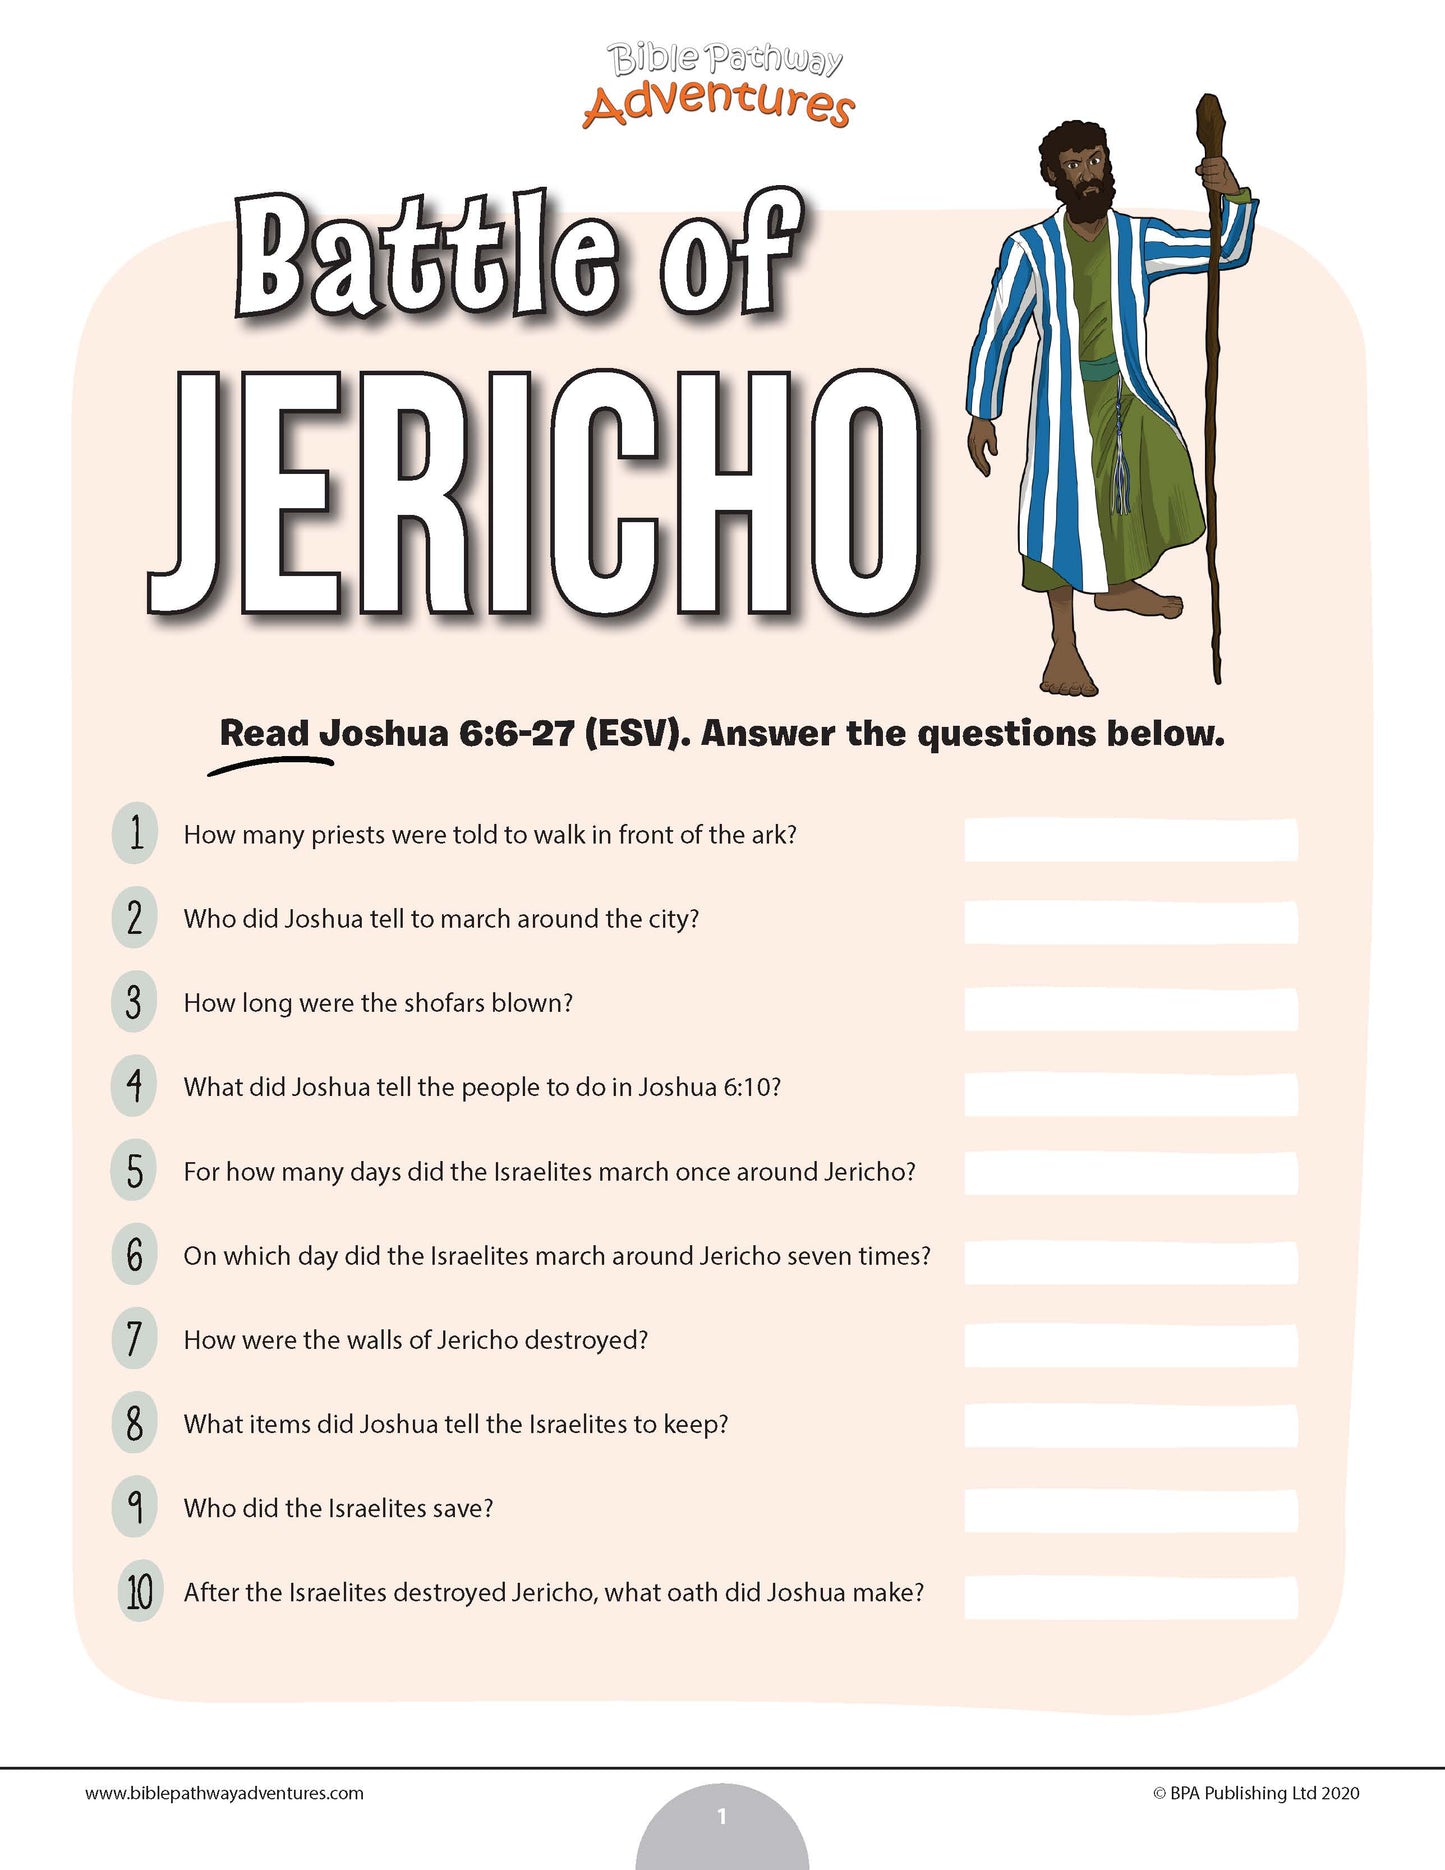 Battle of Jericho quiz